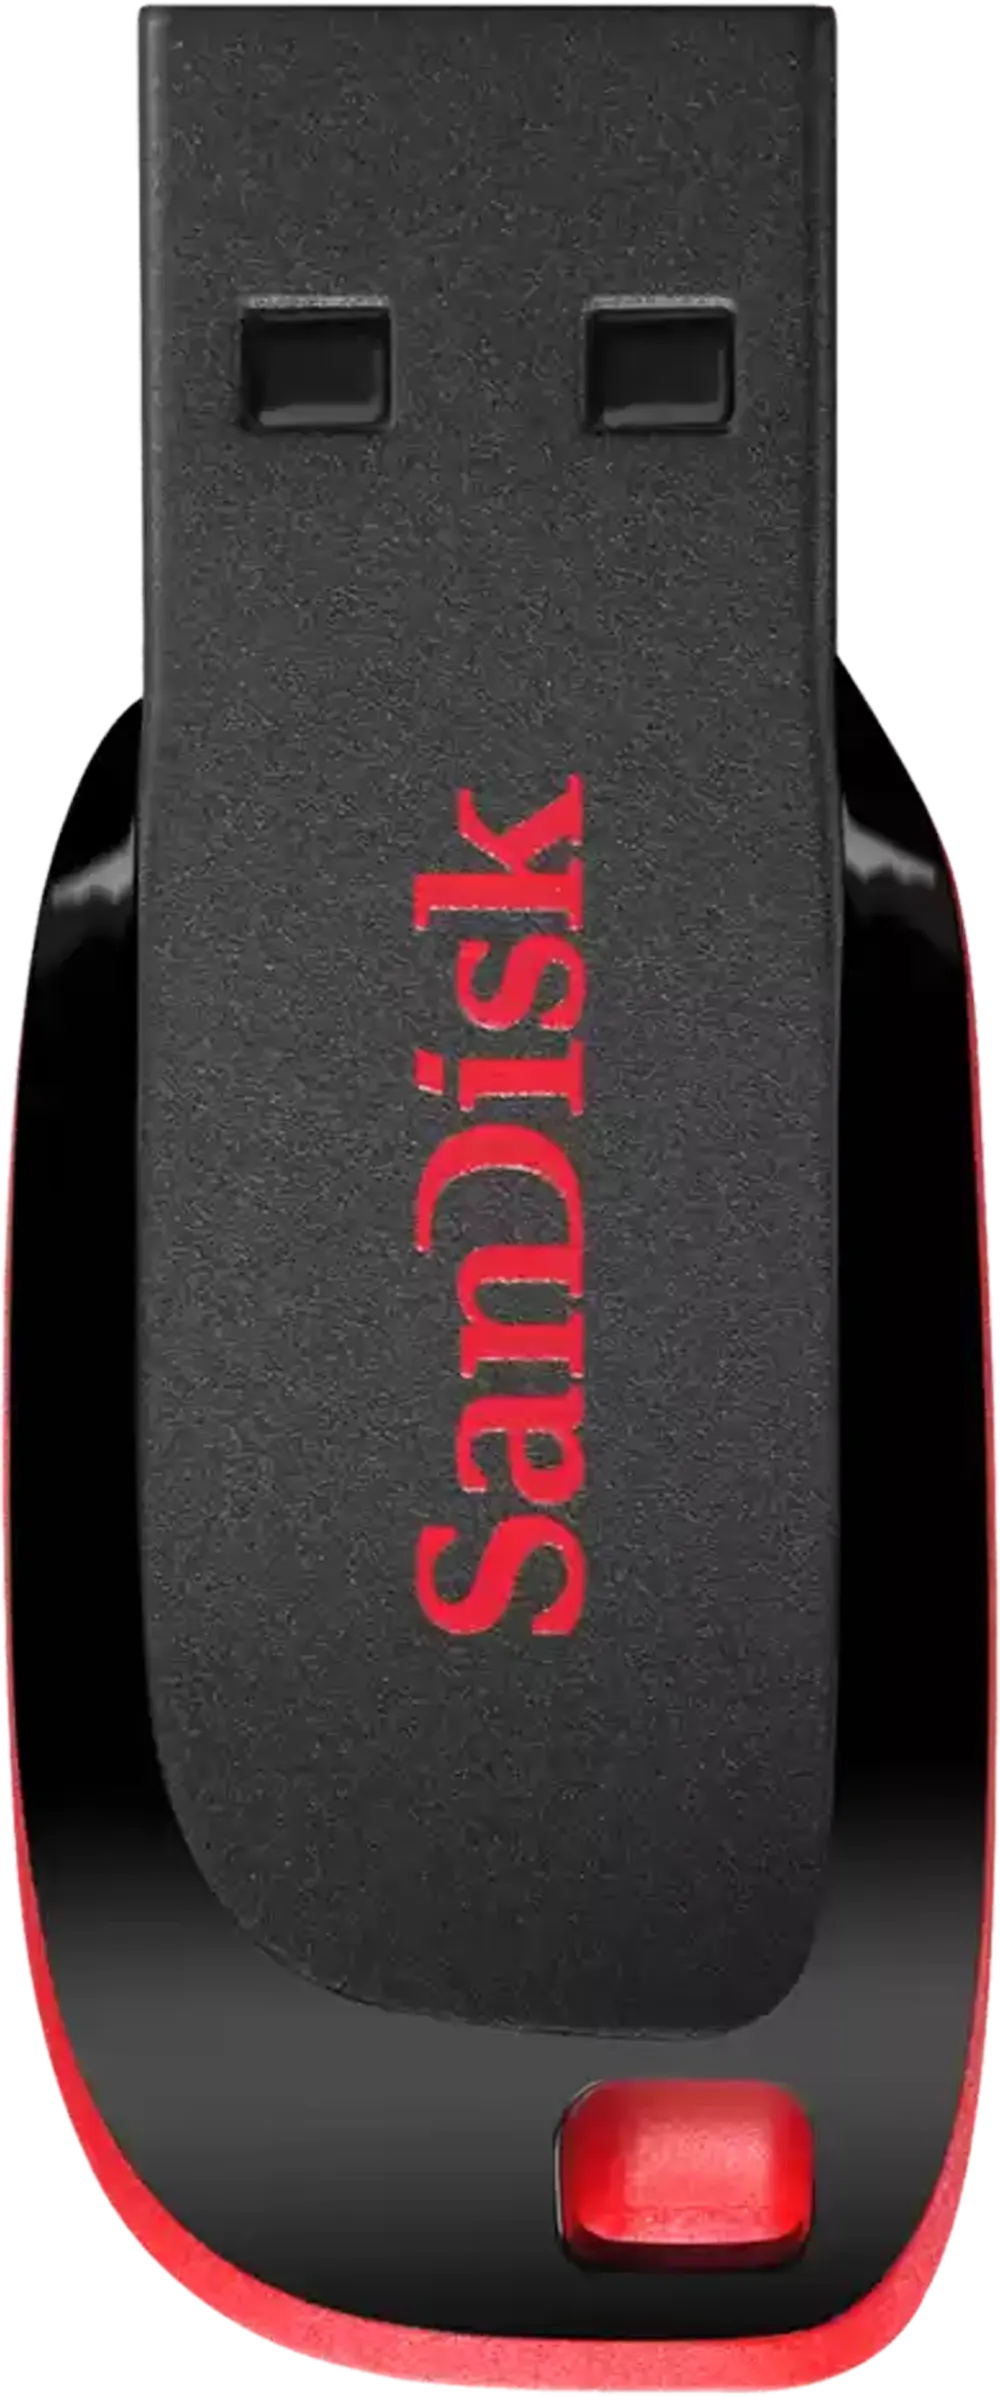 فلاش ميموري سانديسك Cruzer Blade، بسعة 16 جيجابايت، USB 2.0، أسود × أحمر، SDCZ50-016G-B35